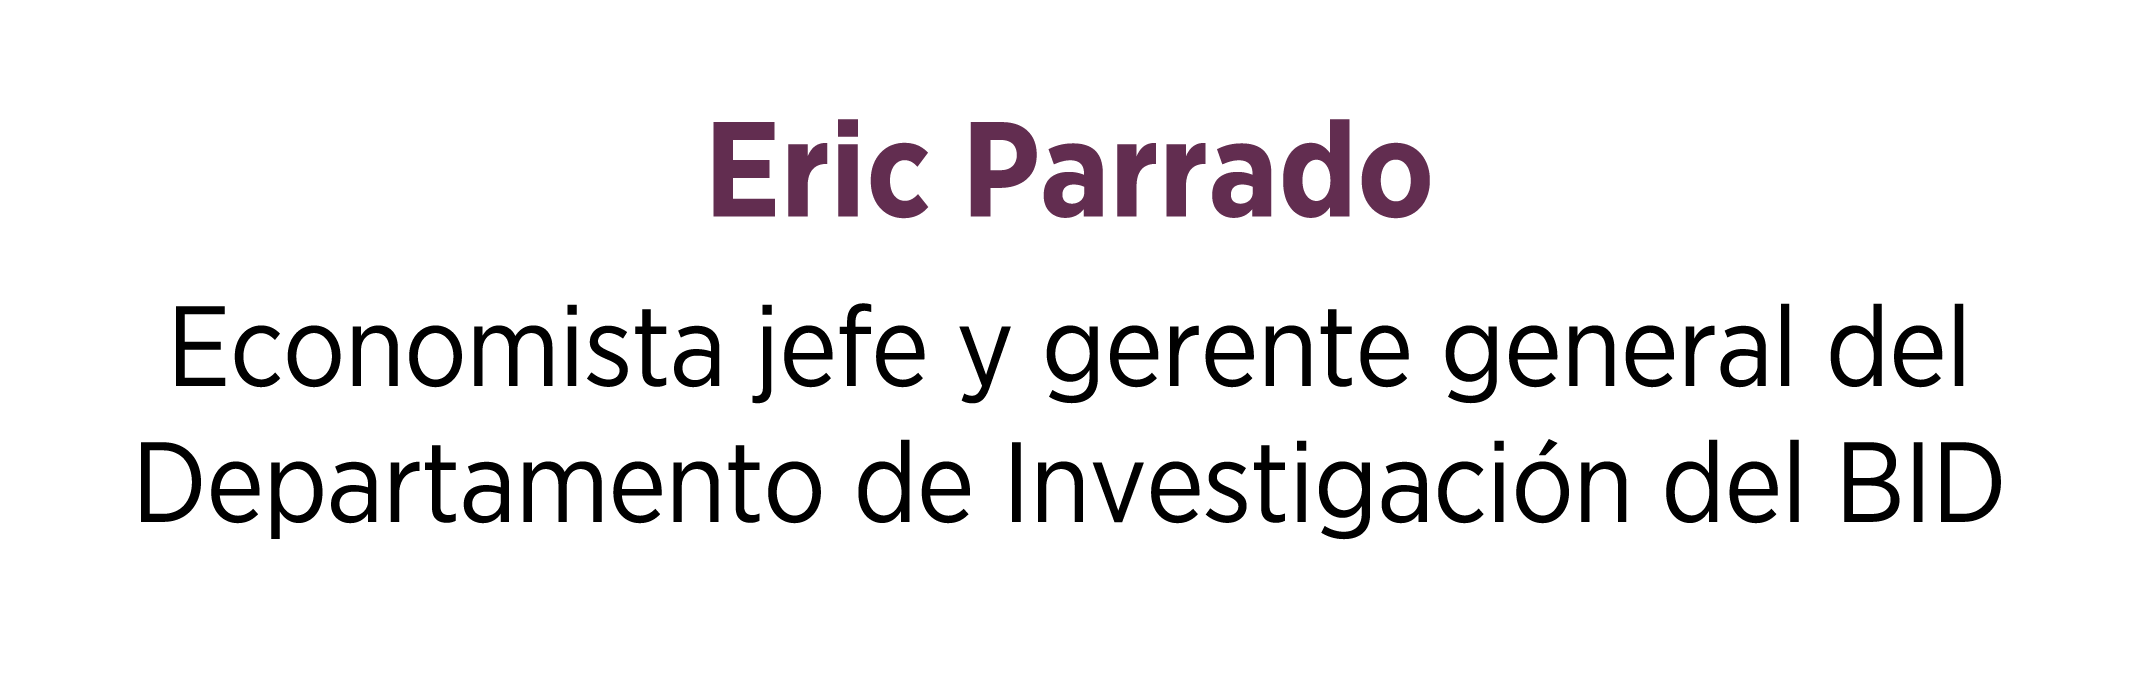 Eric Parrado